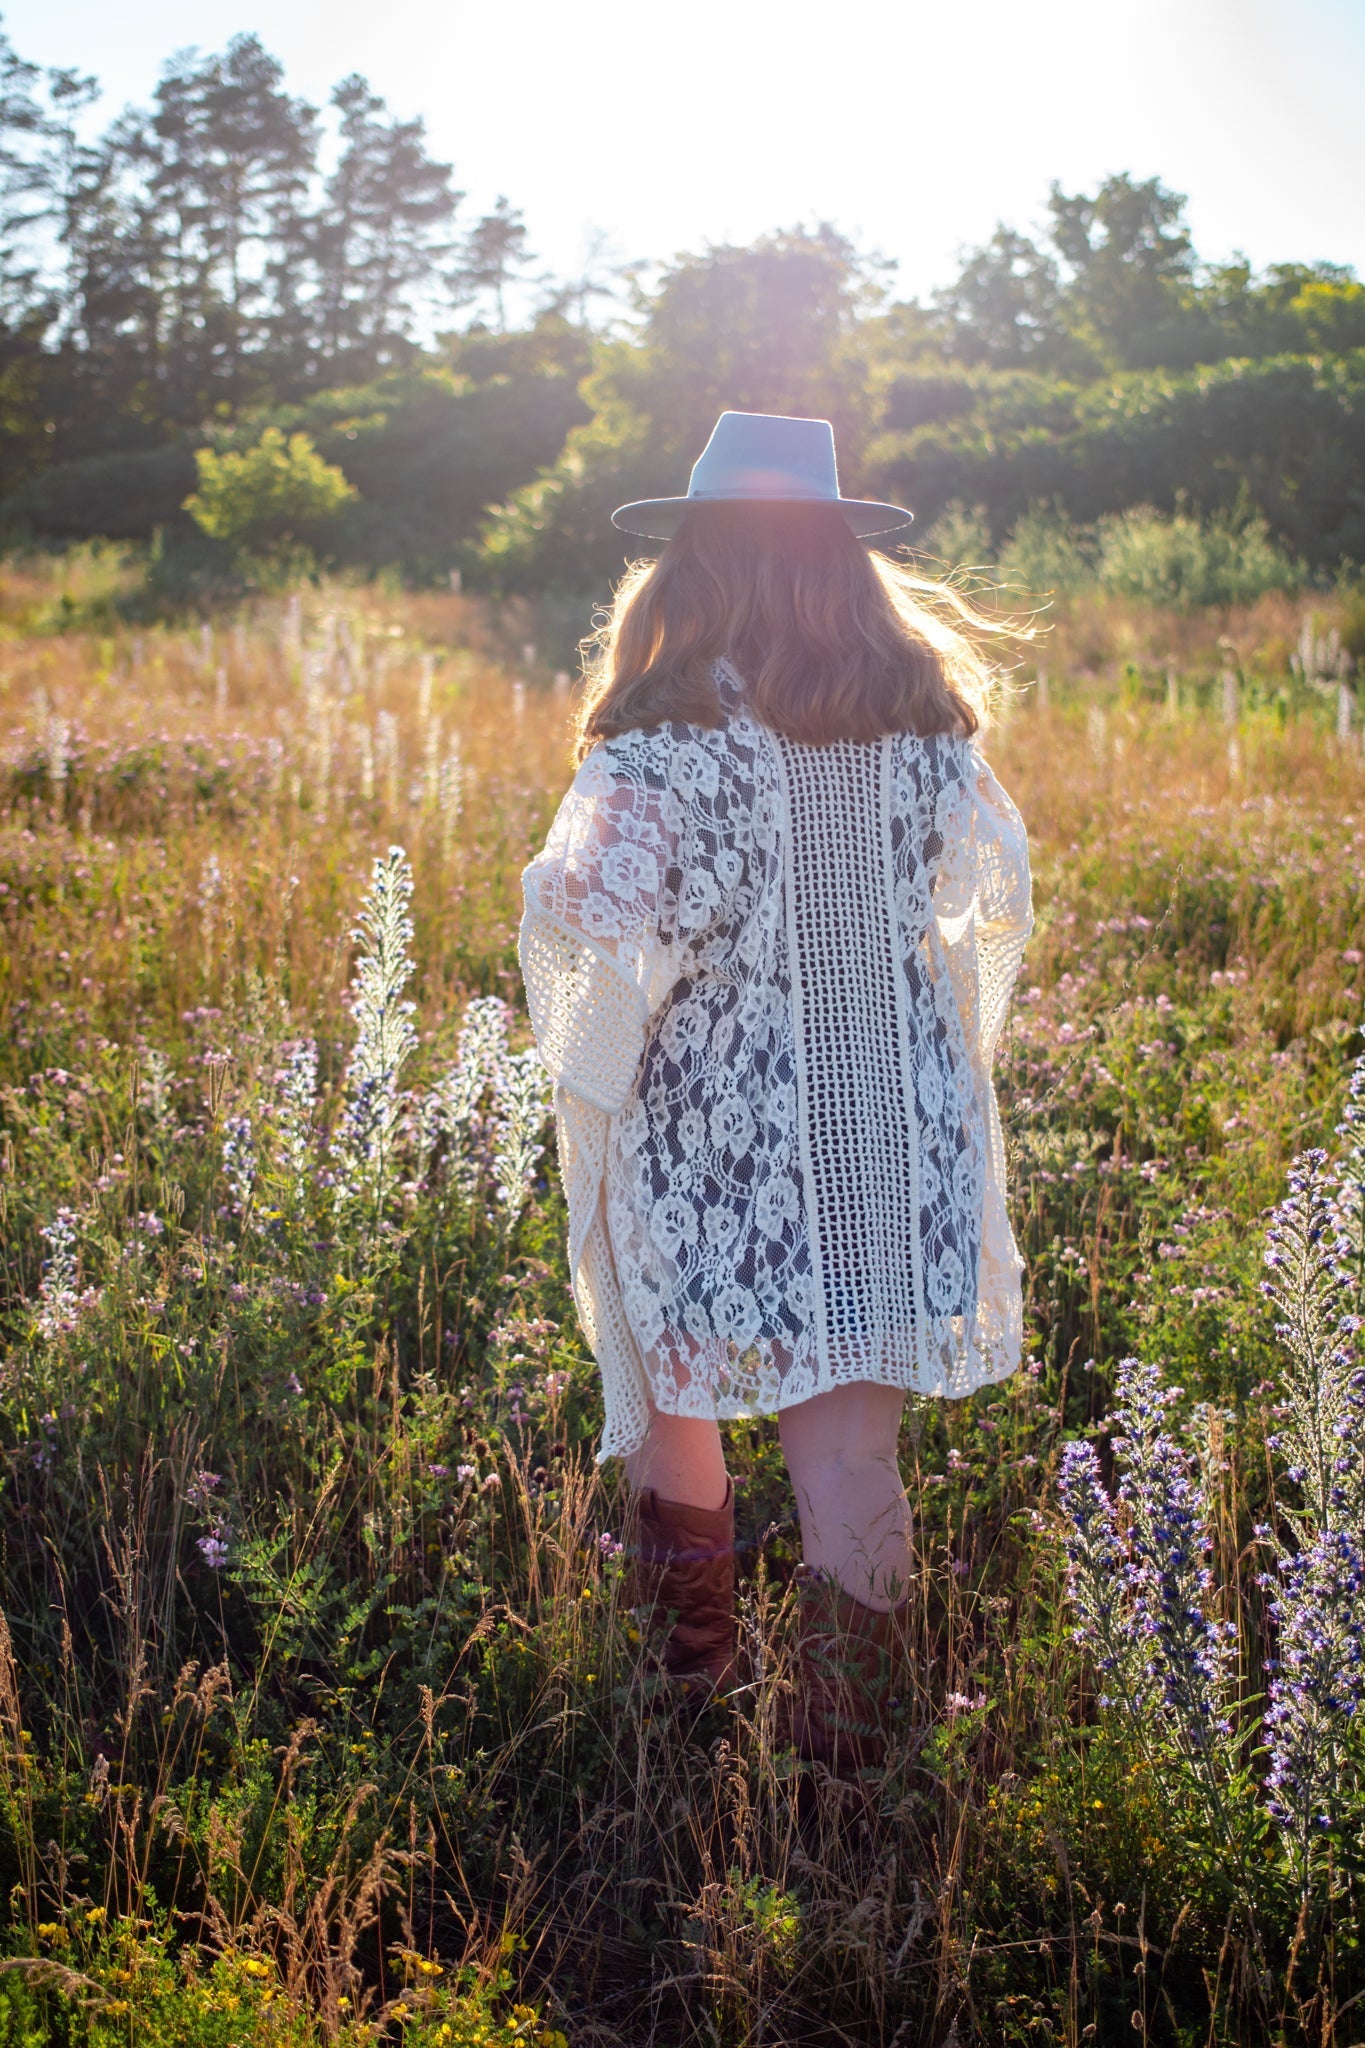 The Meadow - Soft Lace Ivory Boho Kimono